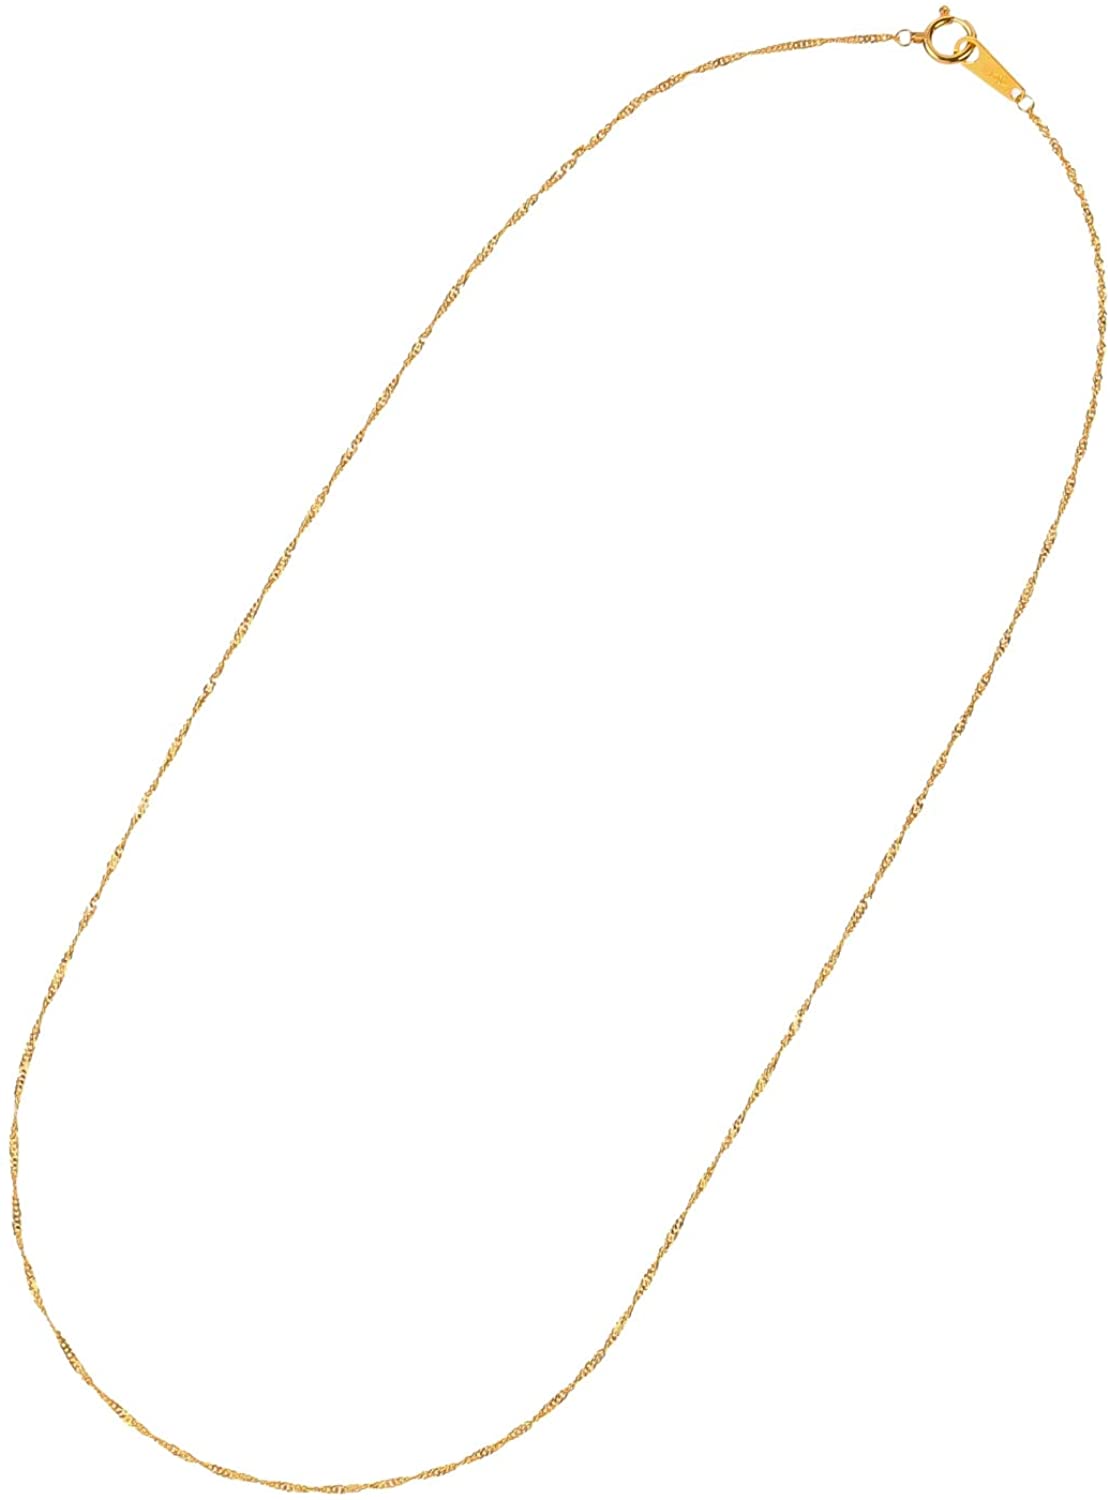 24金ネックレス K24 スクリューチェーン 日本製 純金 検定印 1.7g 42cm 引き輪